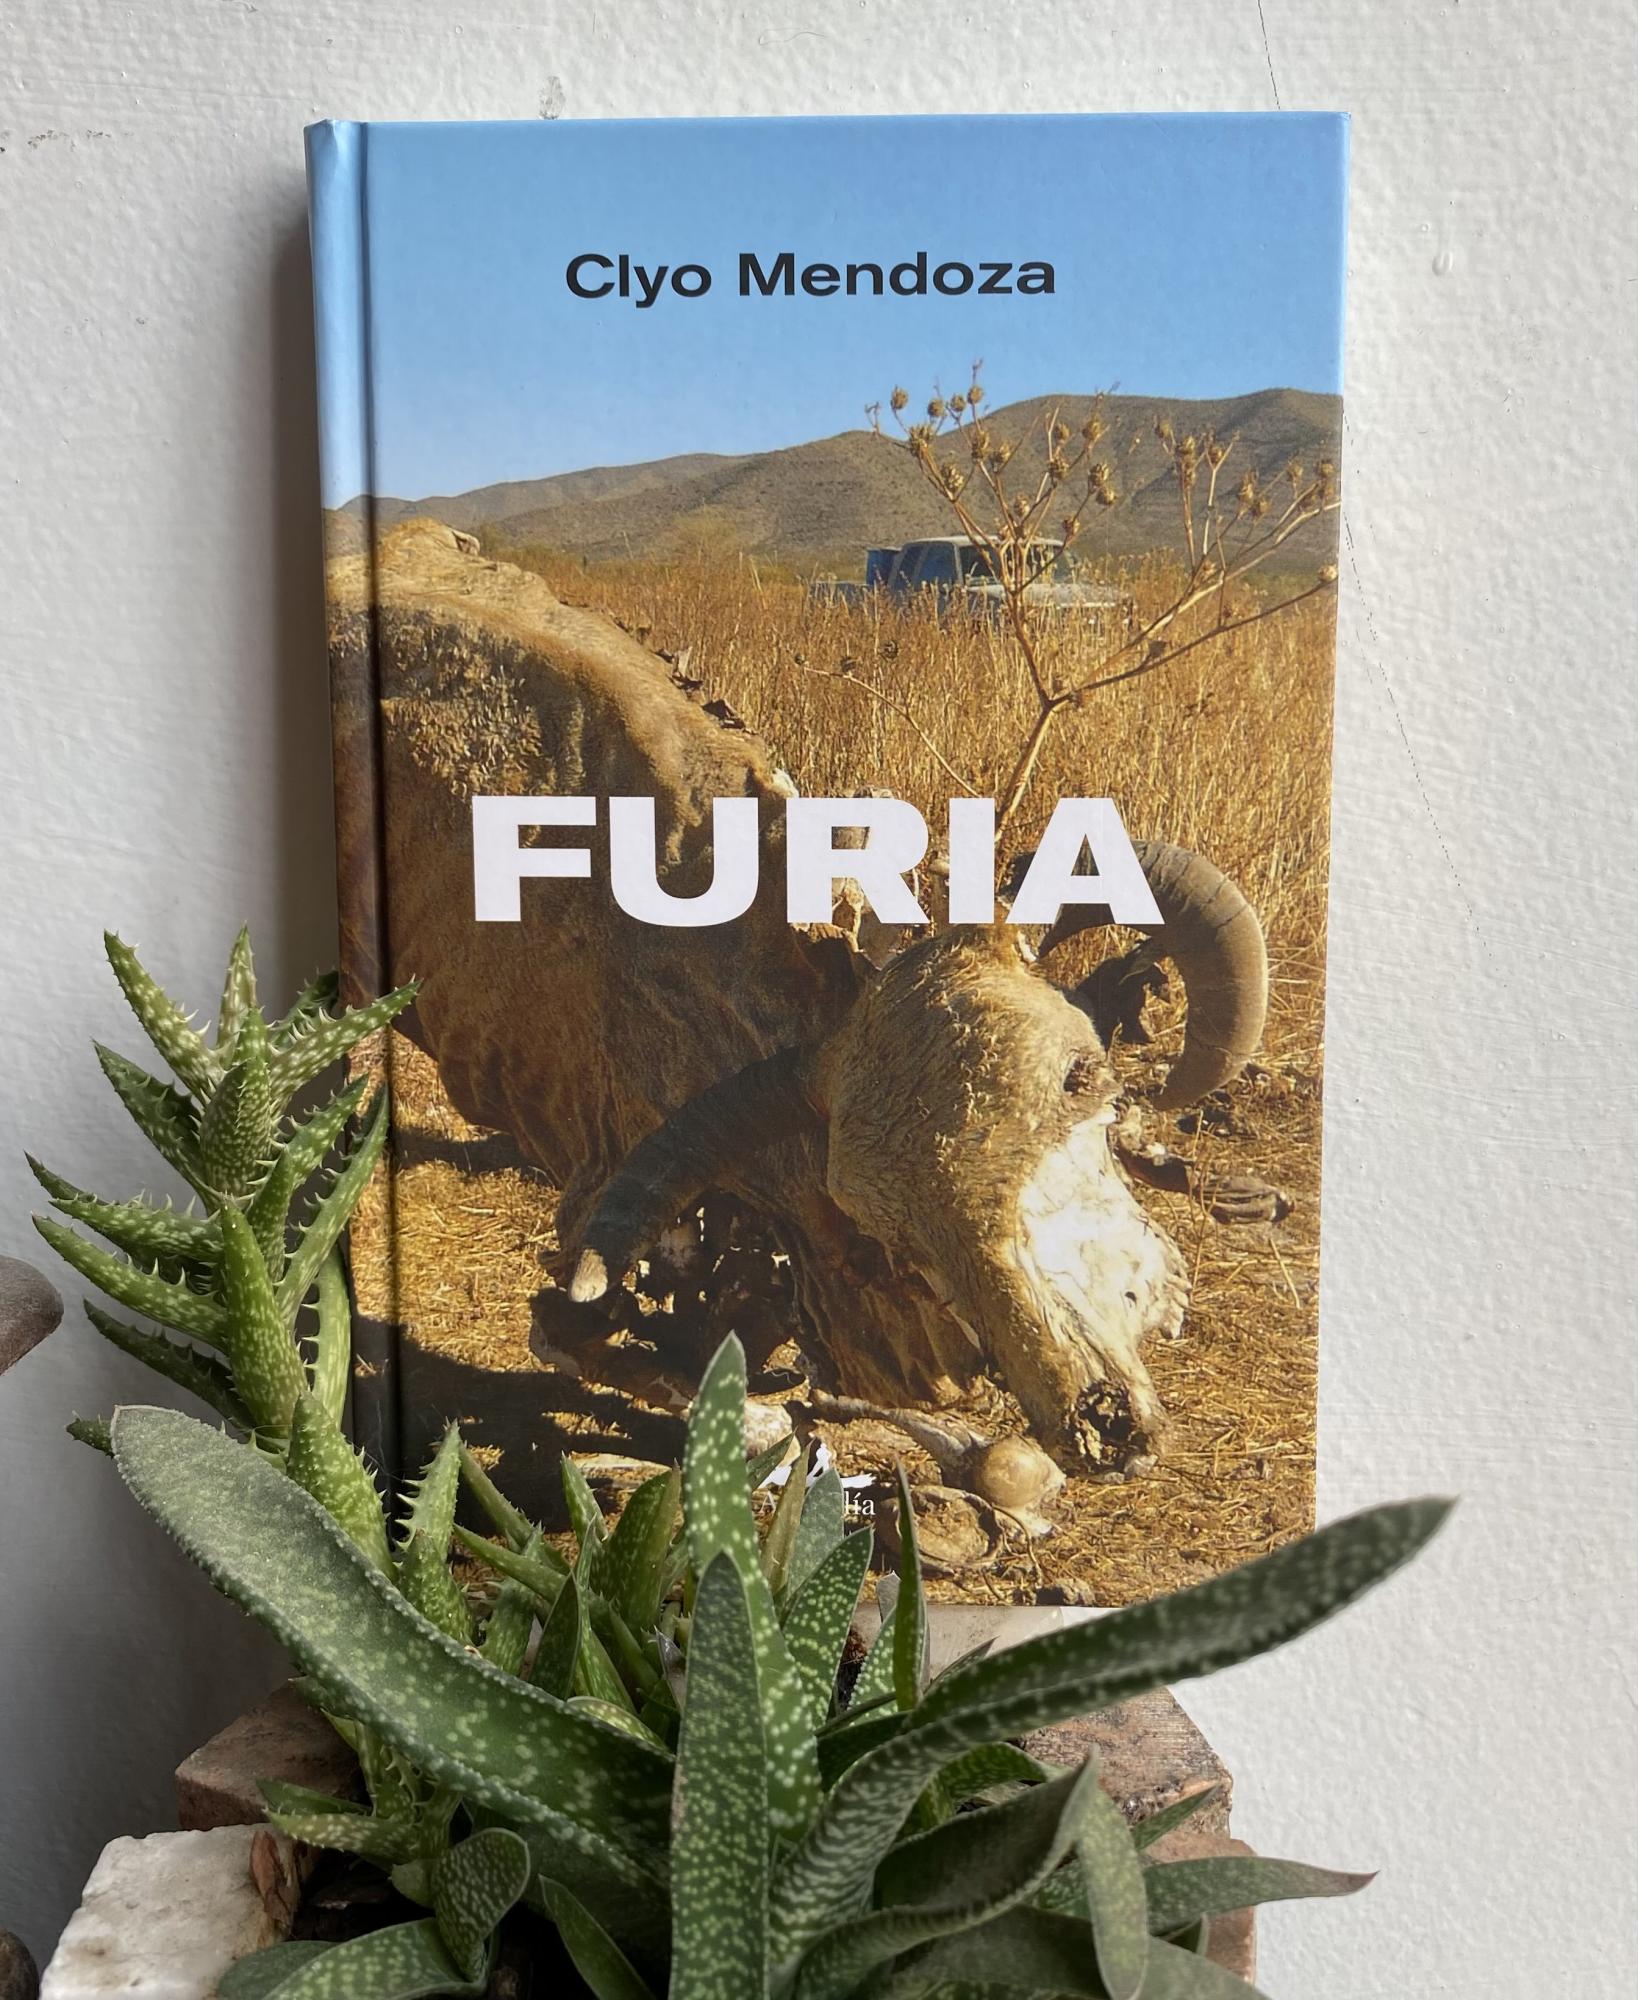 $!Encuentra Clyo Mendoza en la desgracia la reivindicación del amor, con su libro ‘Furia’